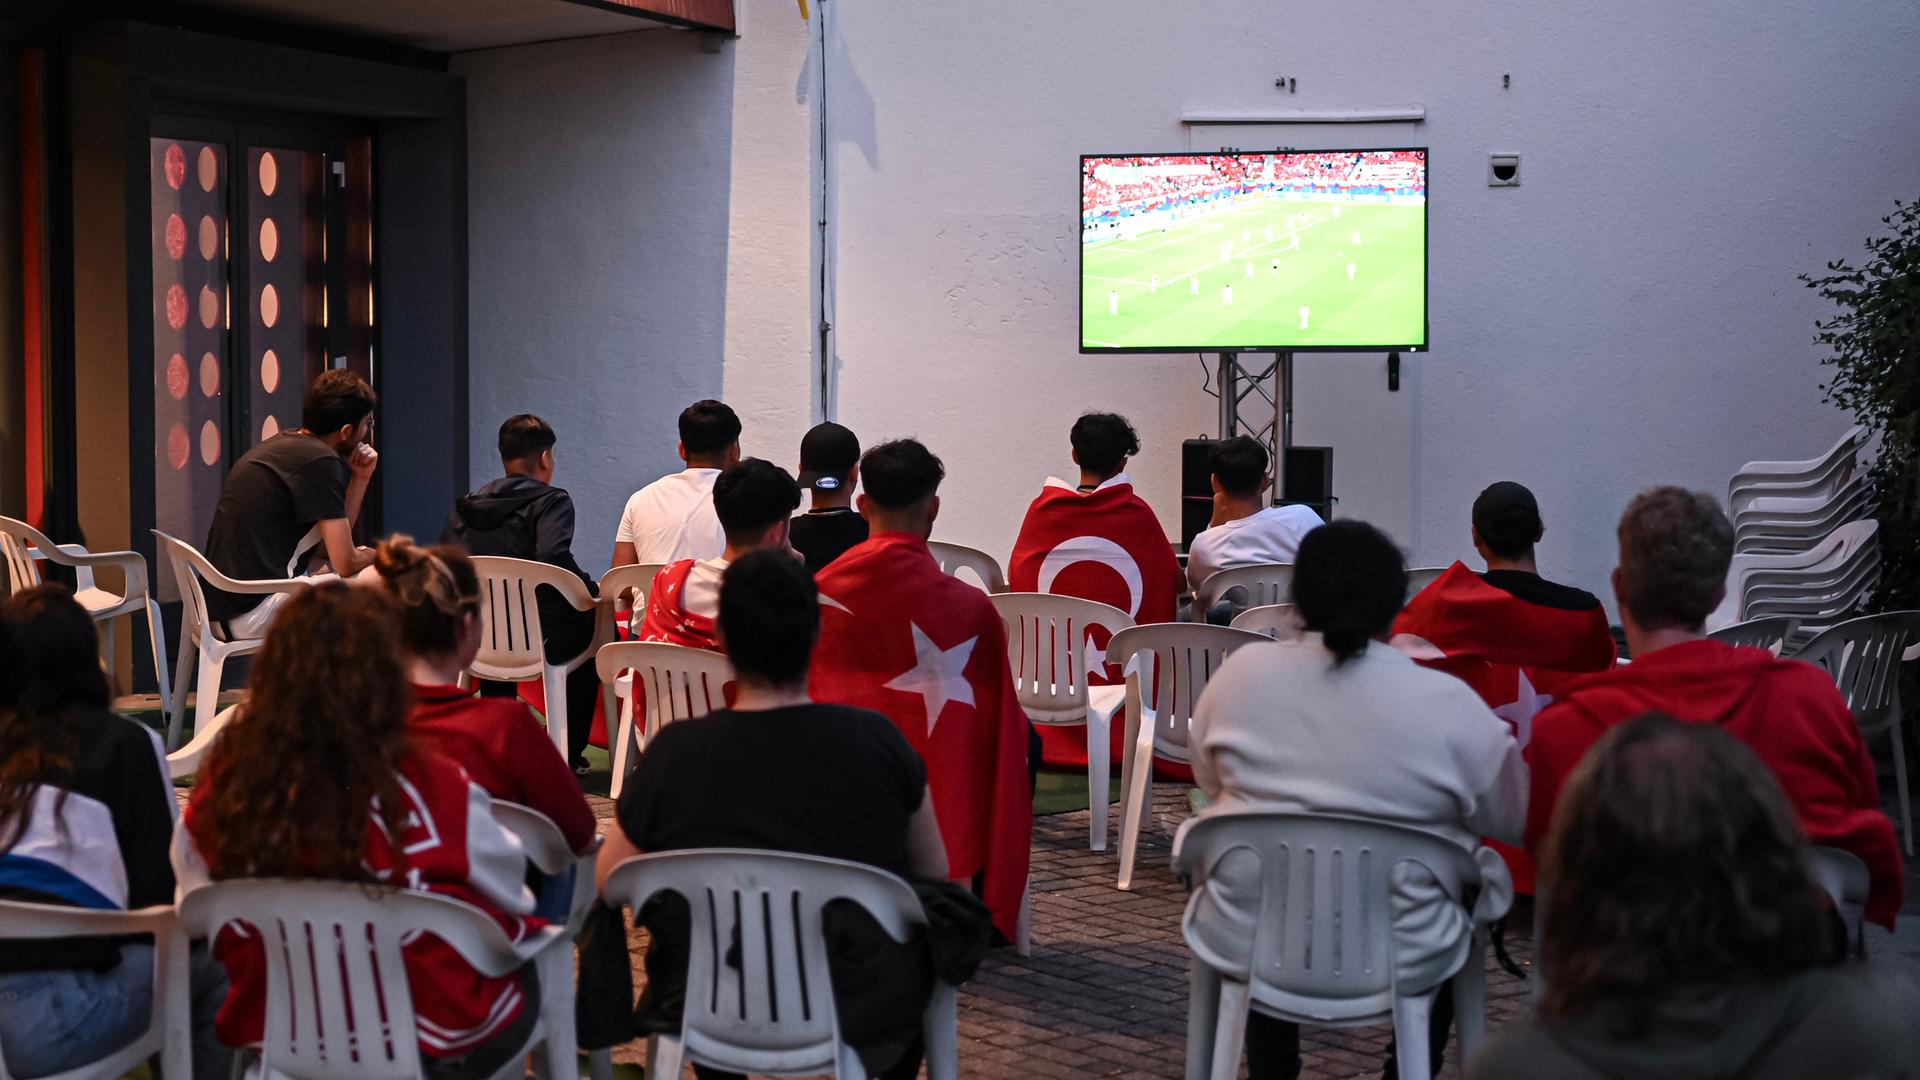 Türkische Fans verfolgen das EM-Spiel Tschechien gegen die Türkei am Bildschirm. 